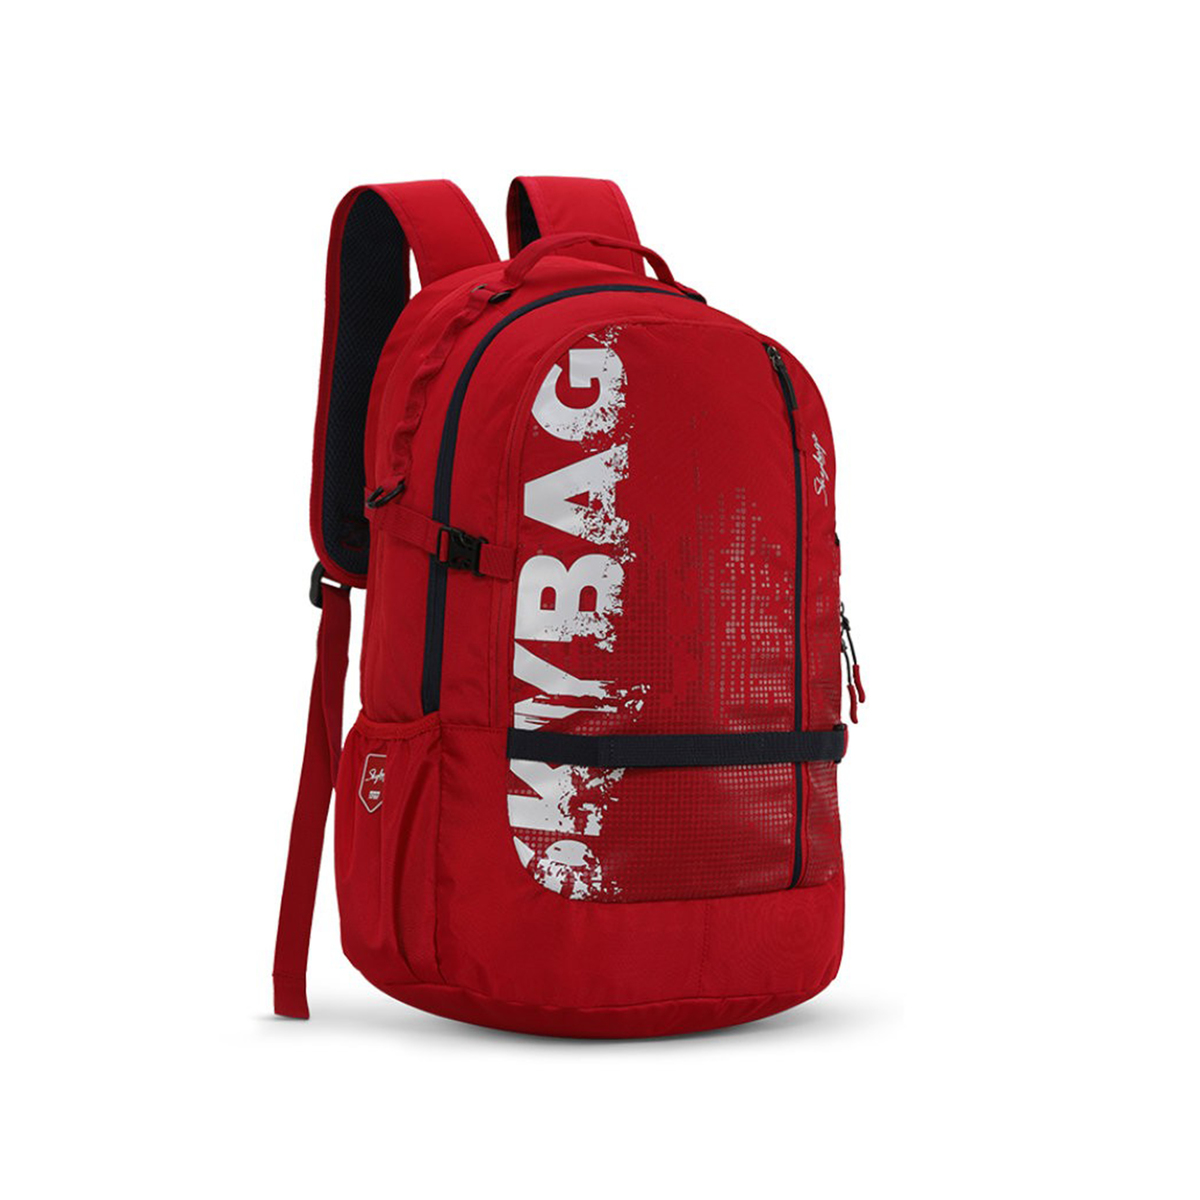 Skybags Laptop Backpack Komet Plus 01 22" Red